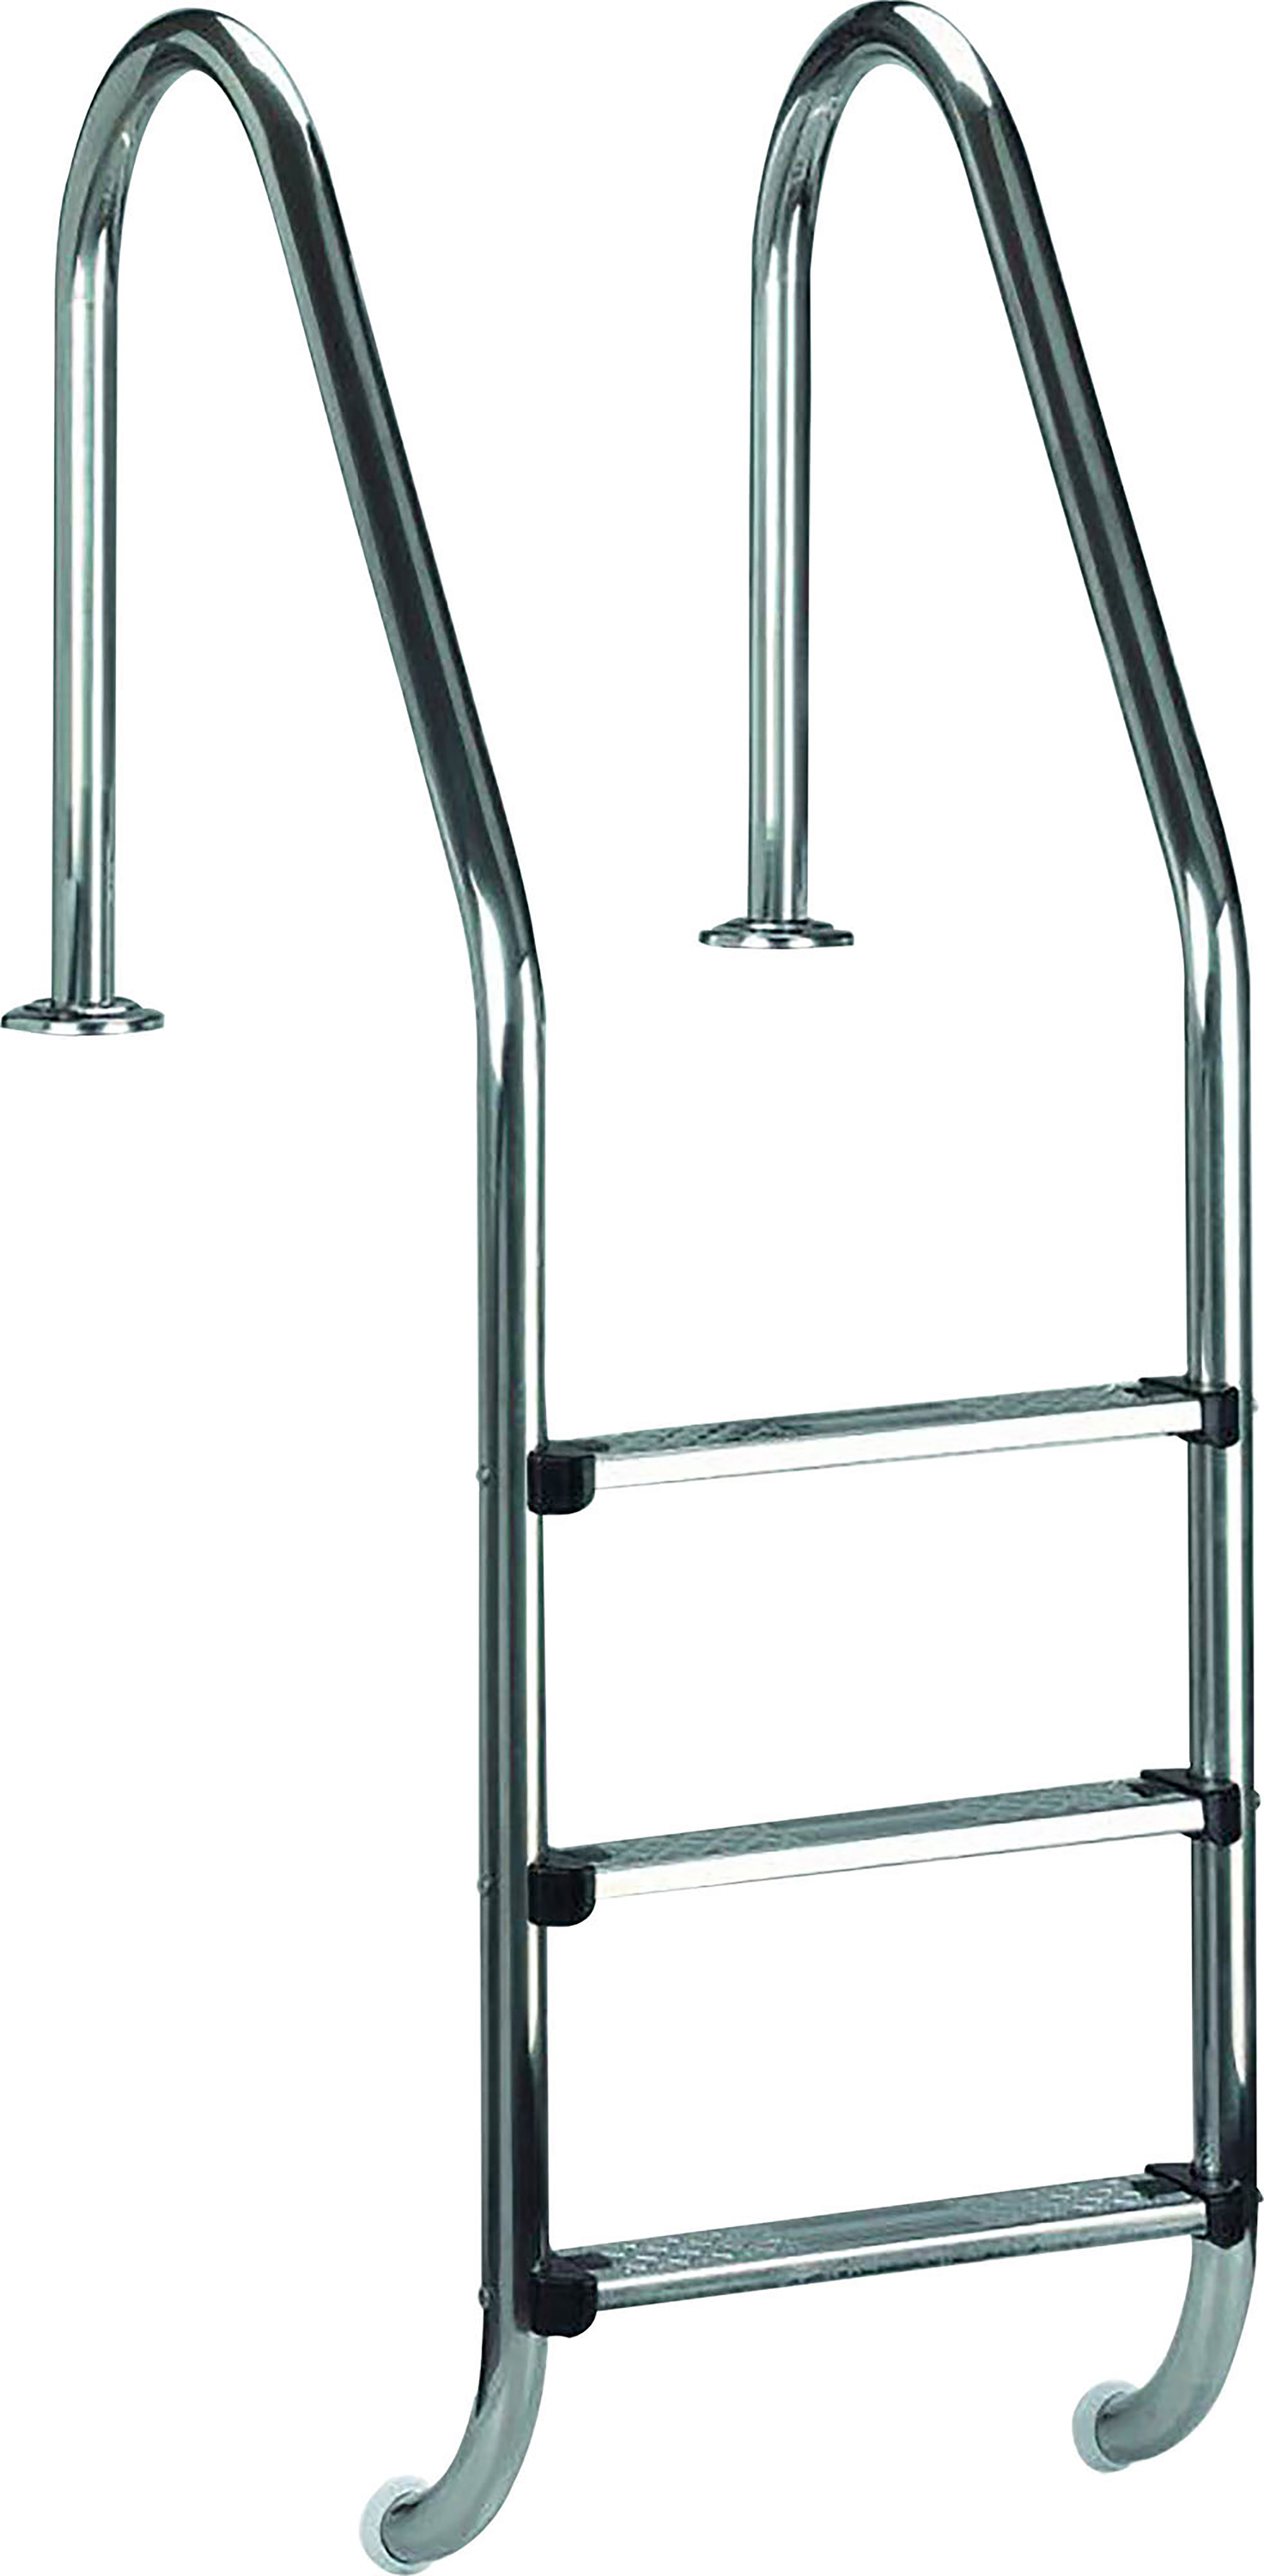 SWIM & Poolleiter, FUN Grau 3-Steps, inground Ladder